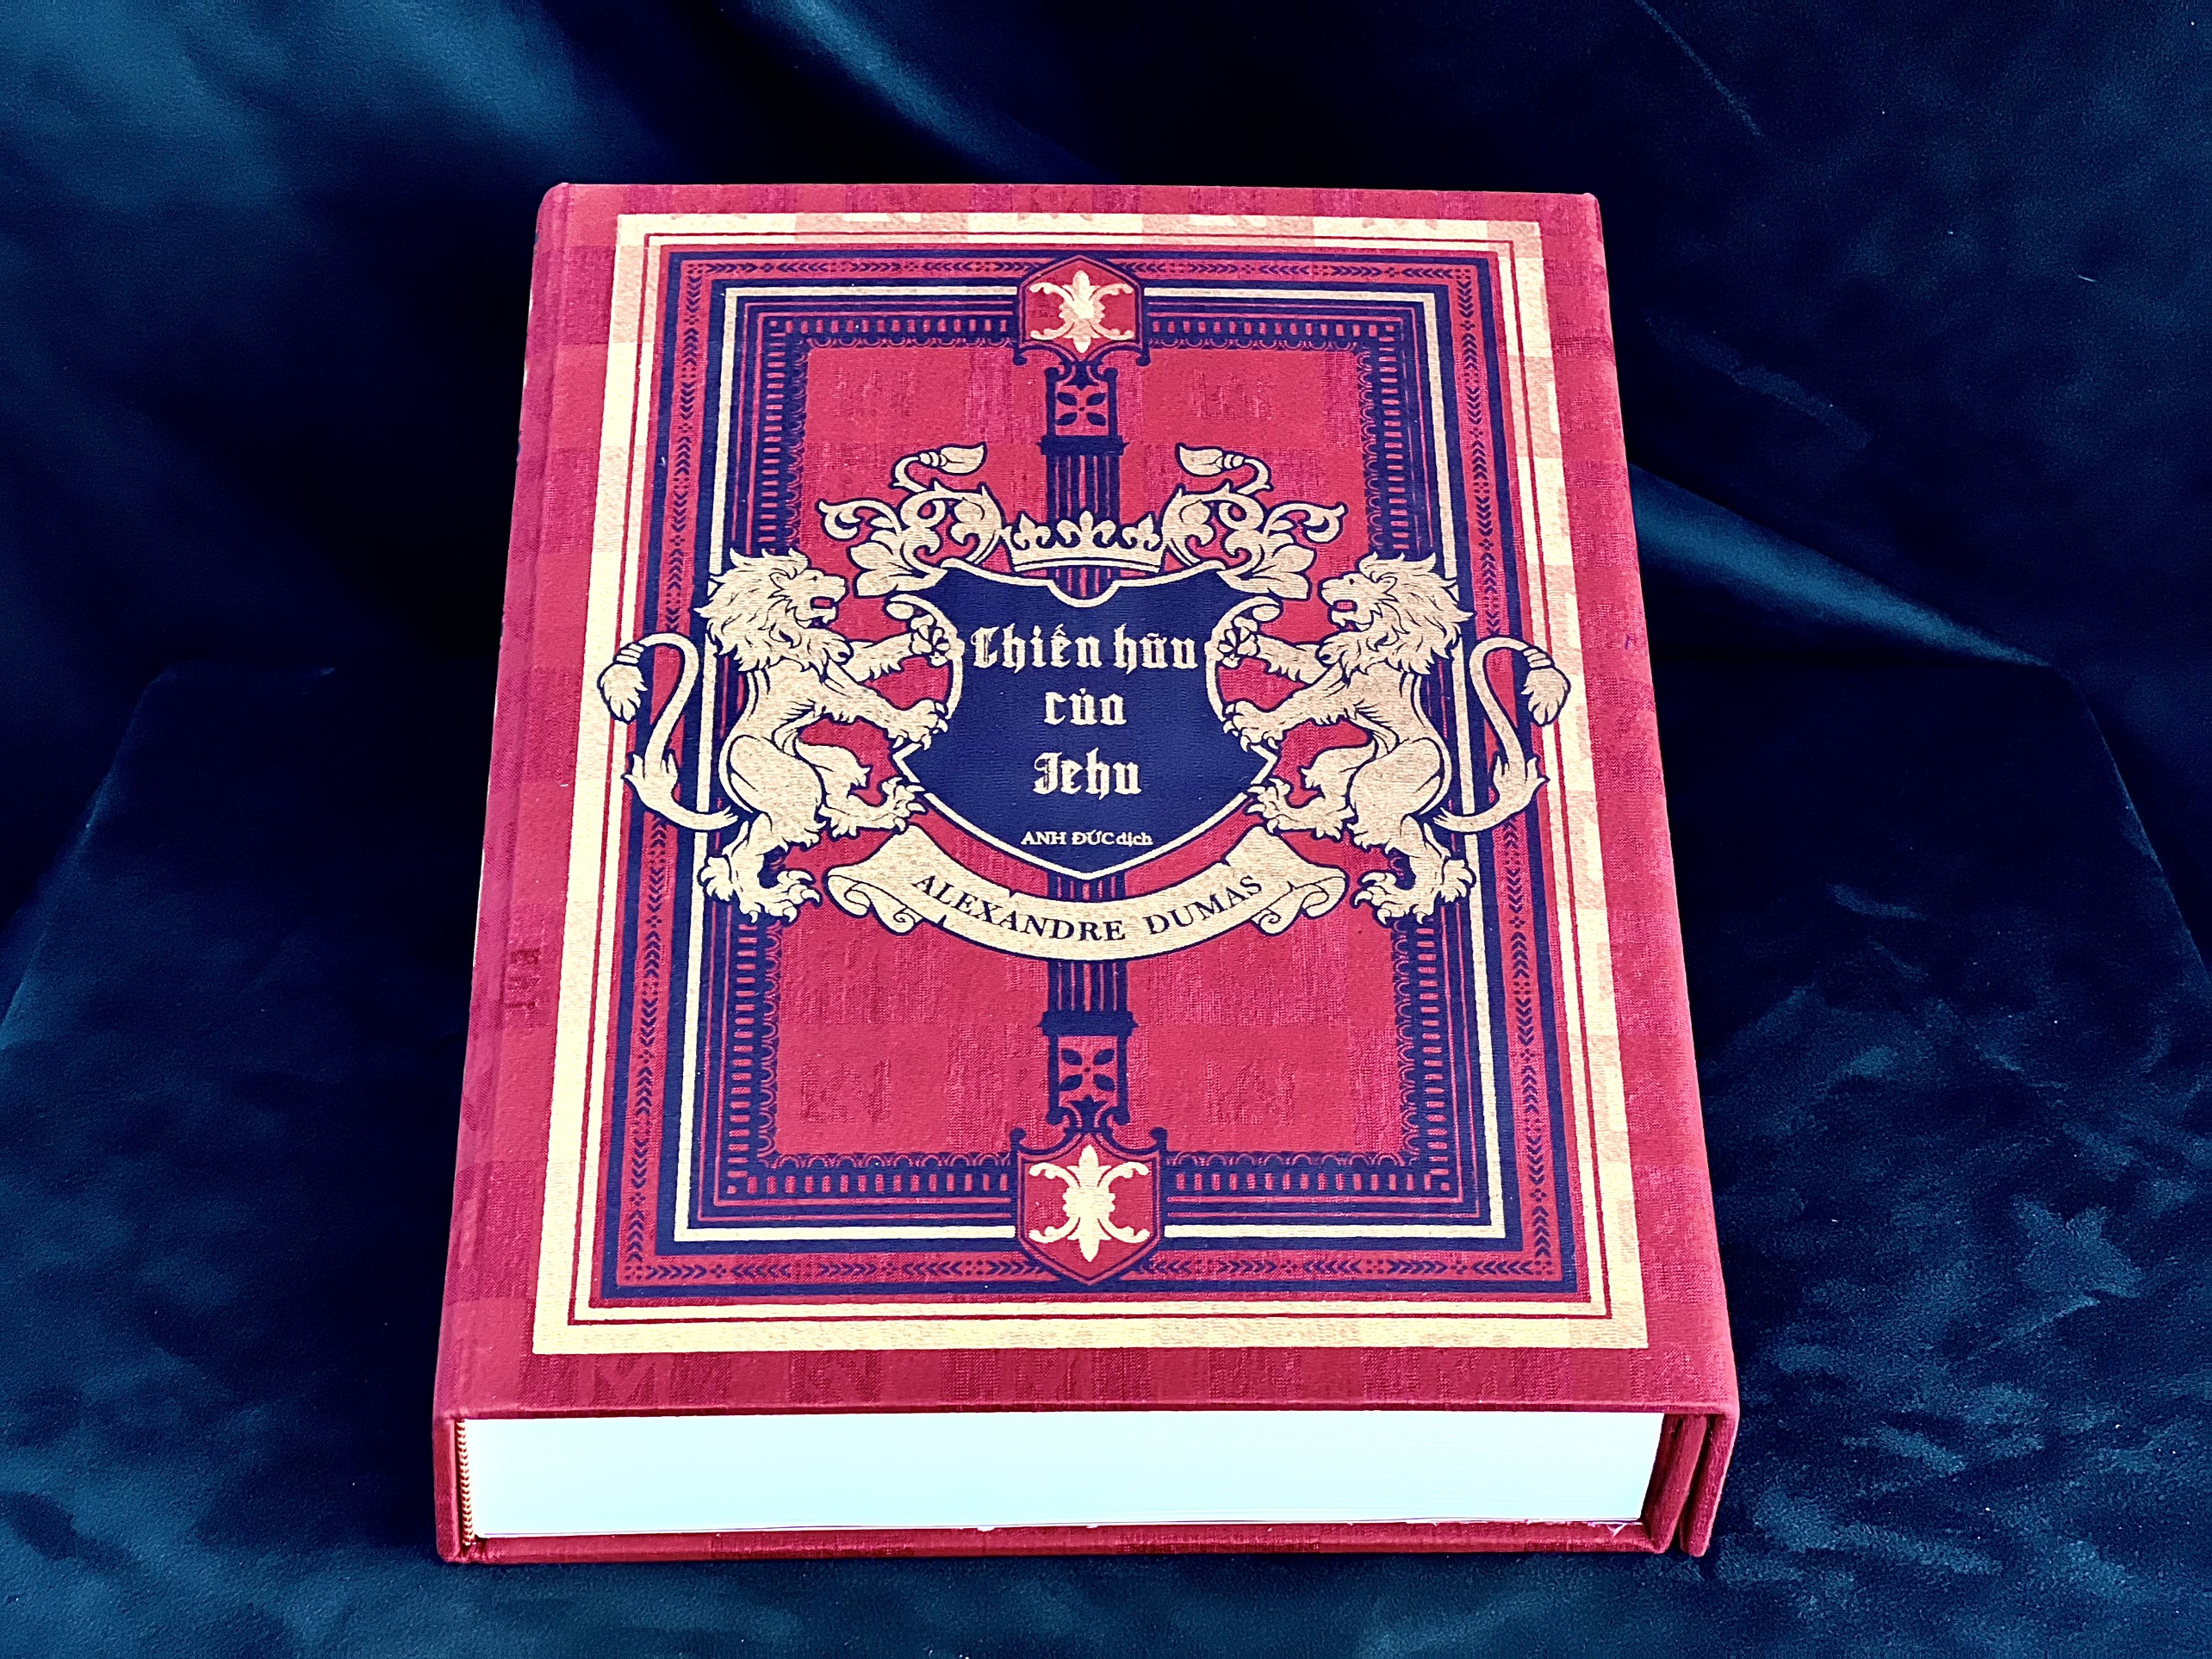 Sách bản giới hạn bìa lụa tơ tằm CHIẾN HỮU CỦA JEHU - Alexandre Dumas, Anh Đức dịch